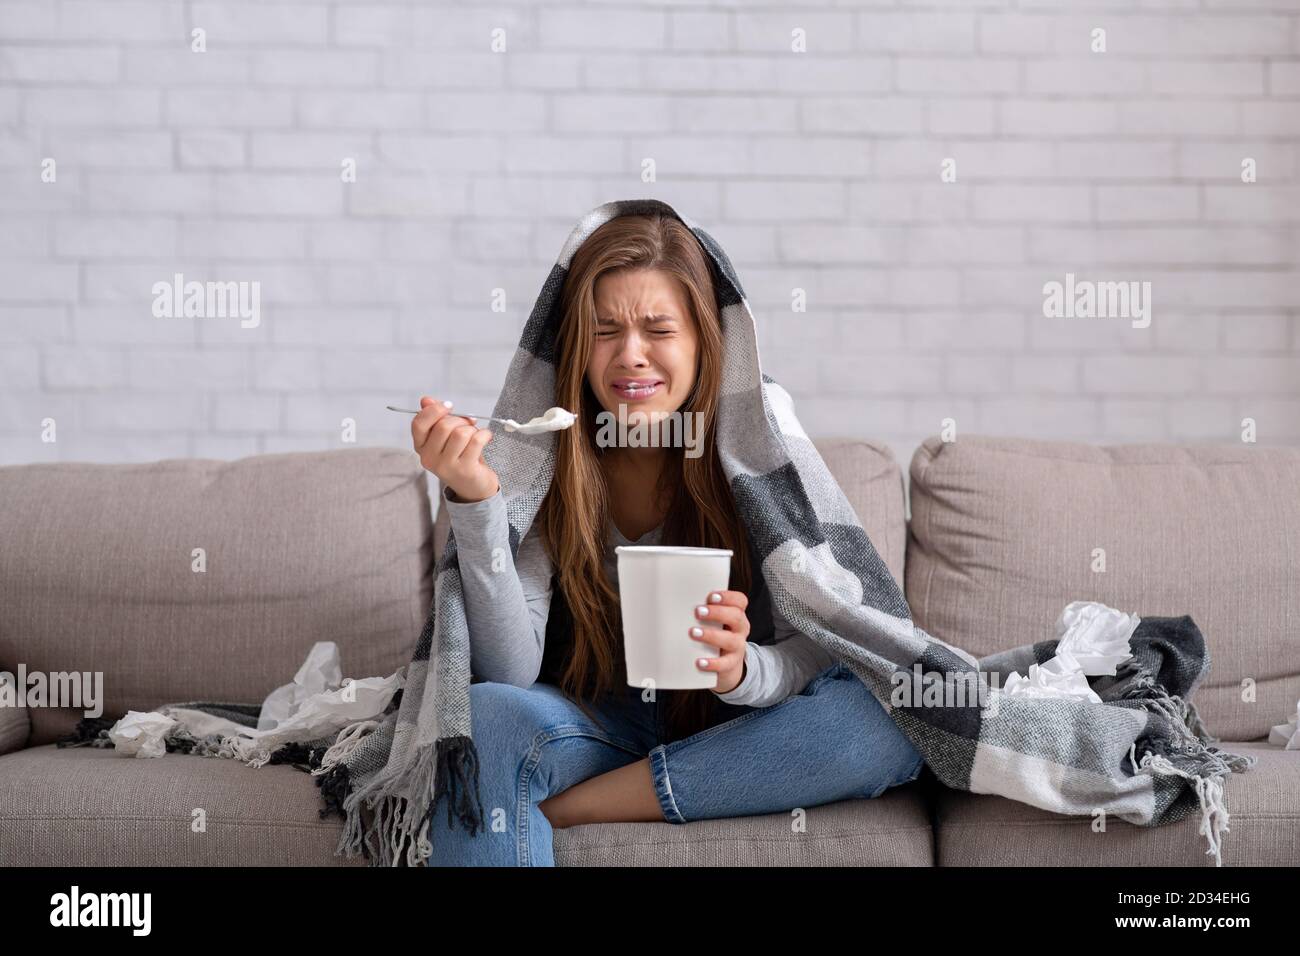 Herzgebrochene junge Frau, die Eis aus dem Eimer isst, während sie einen romantischen Film im Fernsehen sieht, sich deprimiert und einsam fühlt Stockfoto